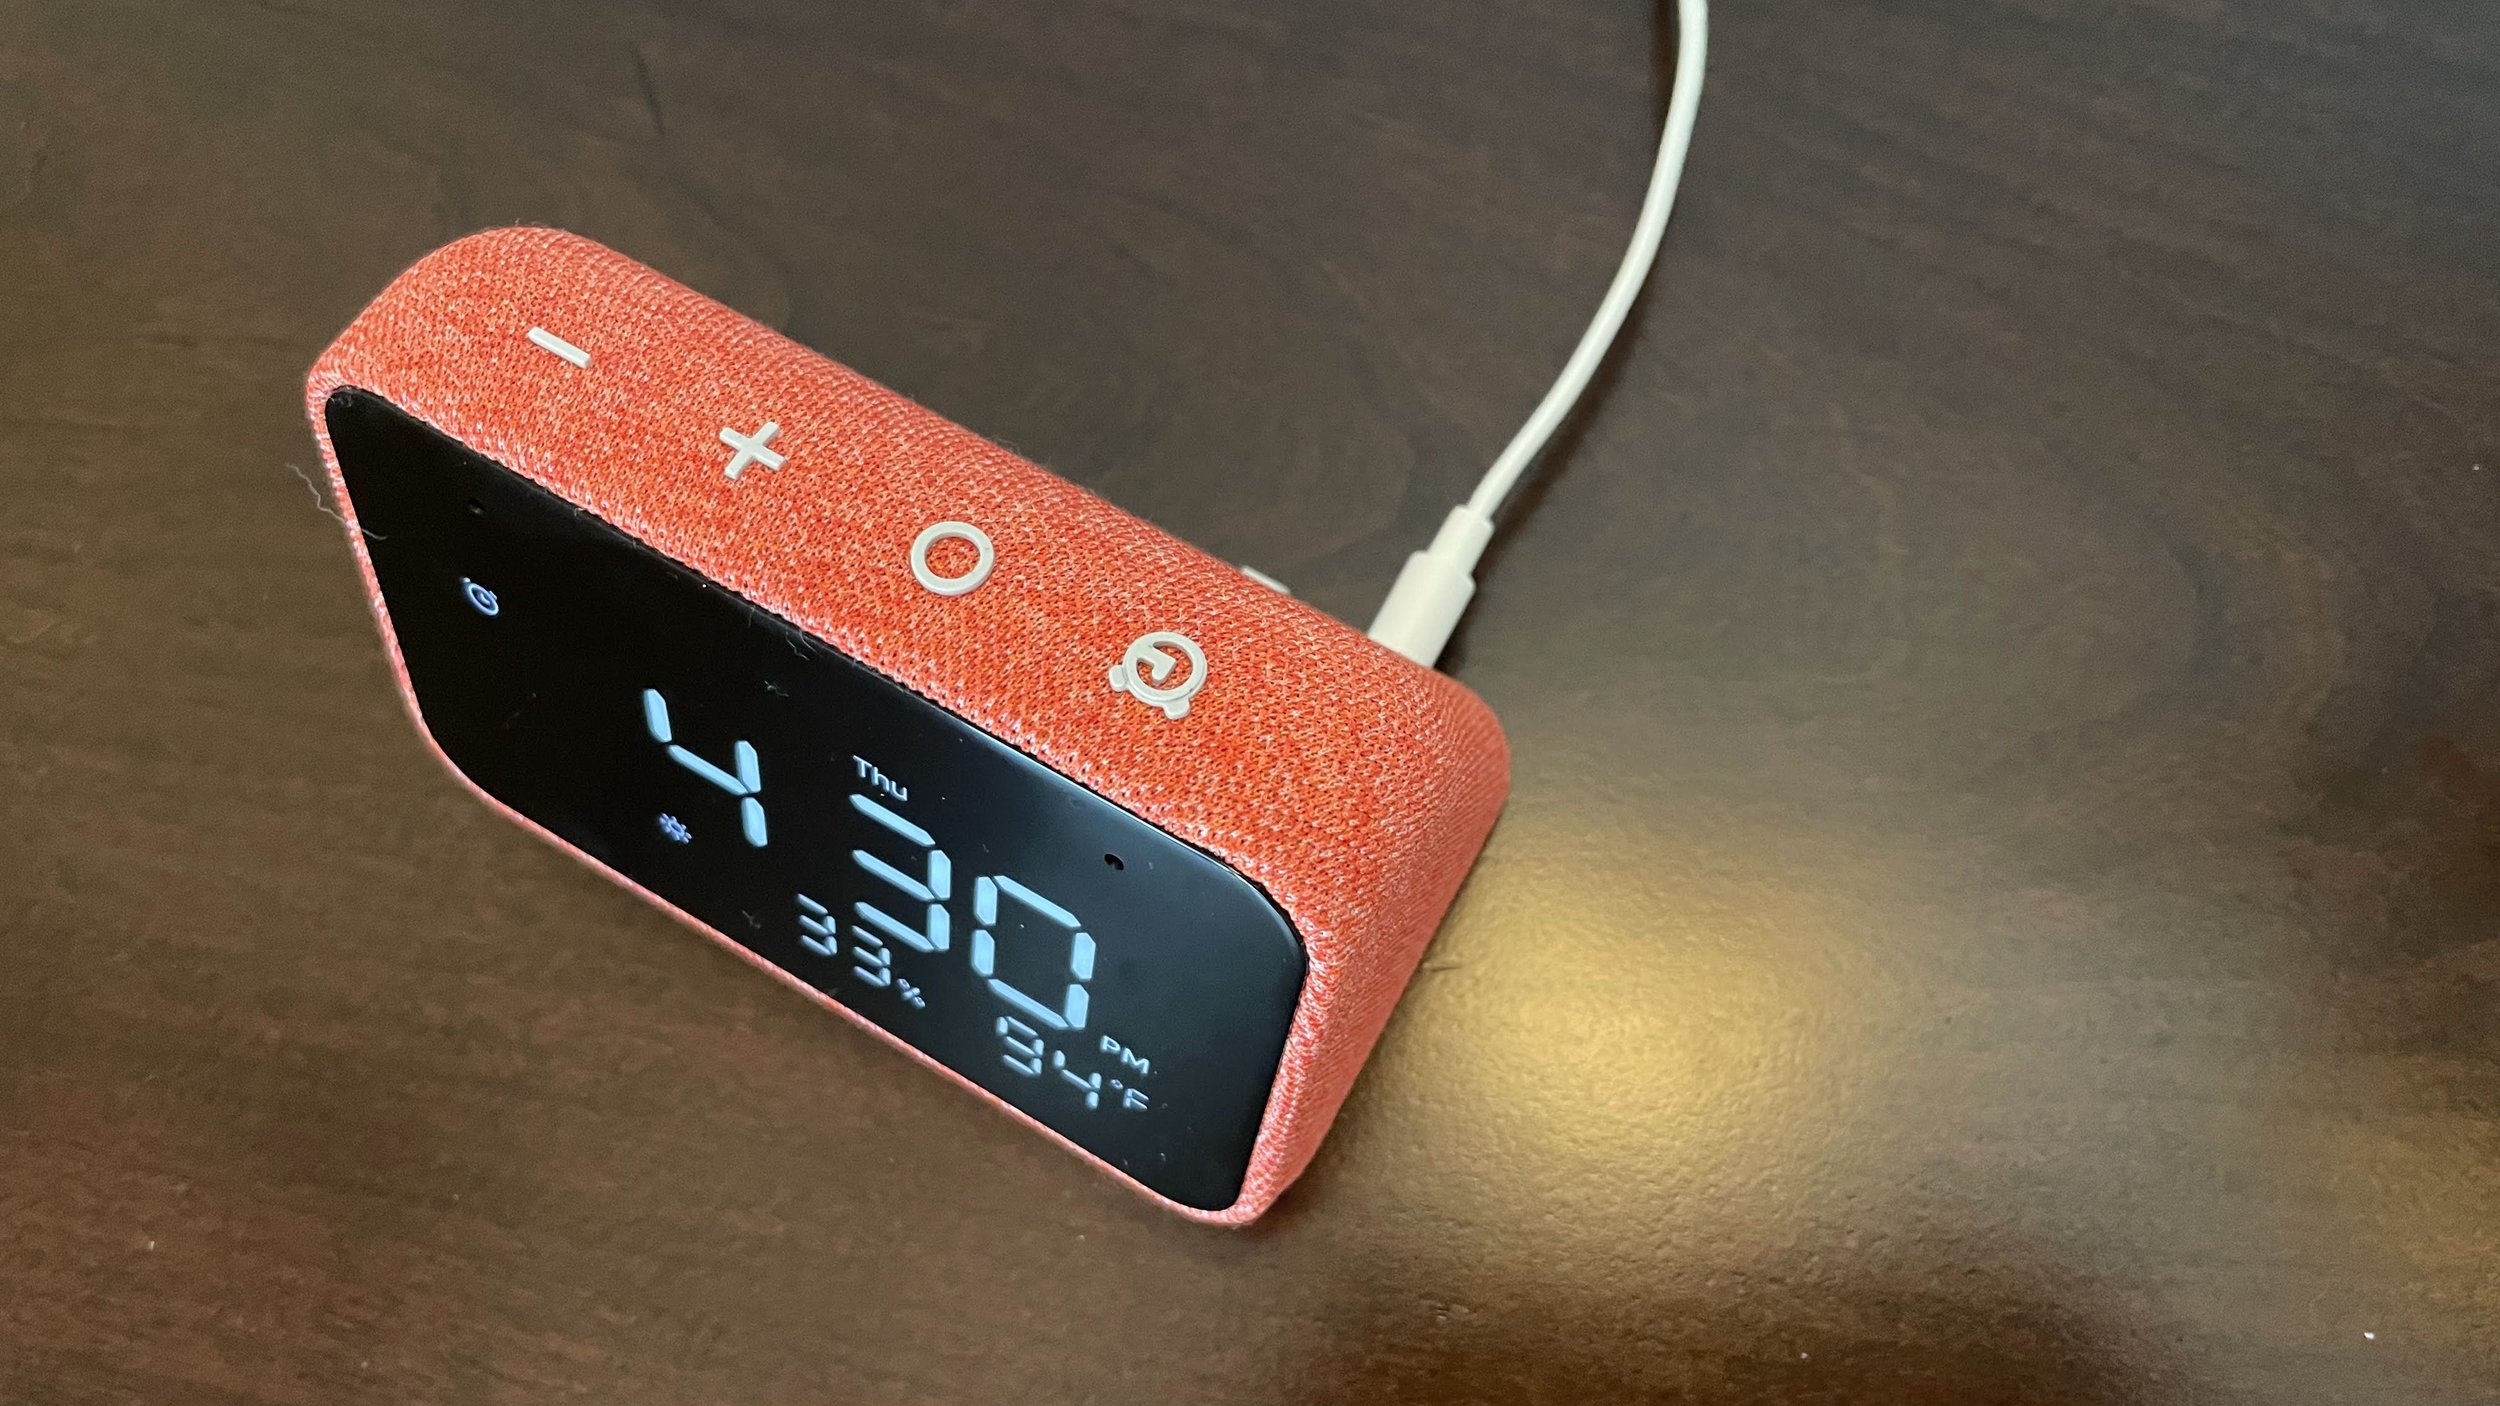 Lenovo Smart Clock Essential Review: Is Alexa Enough To Wake You? — Sypnotix